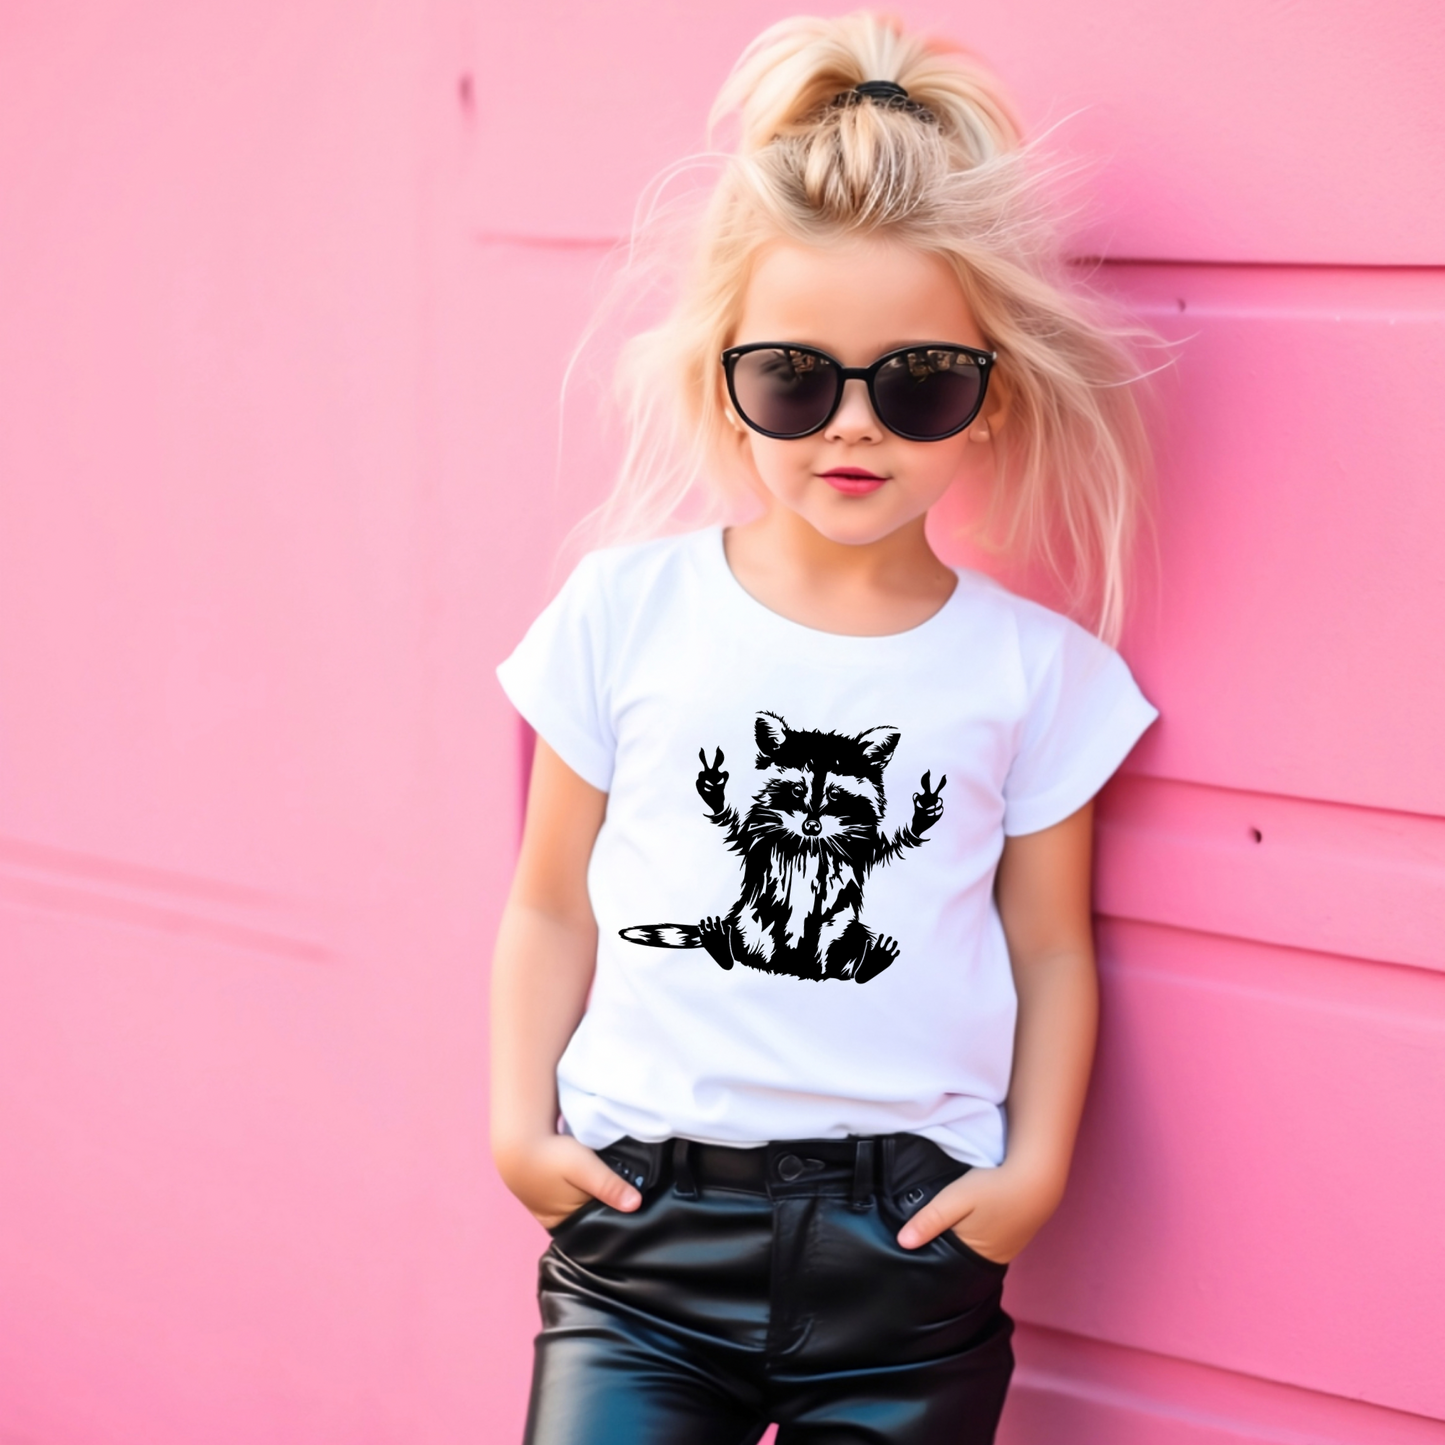 Trash can panda | Racoon t-shirt | Kids t-shirt